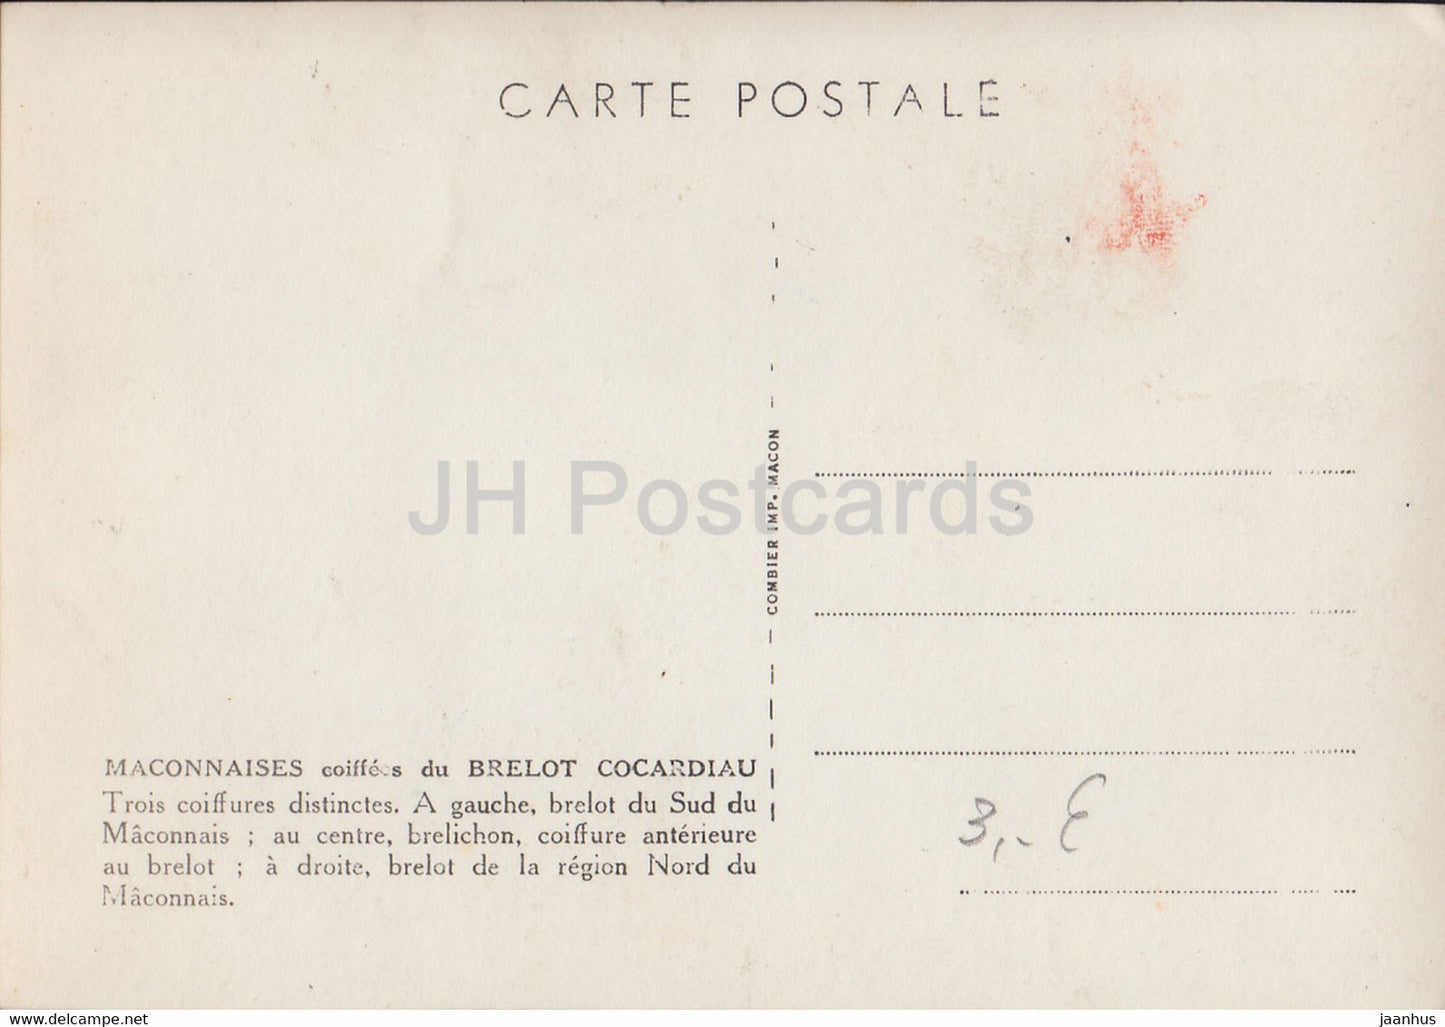 Maconnaises - Brelot Cocardiau - folk costumes - old postcard - France - unused